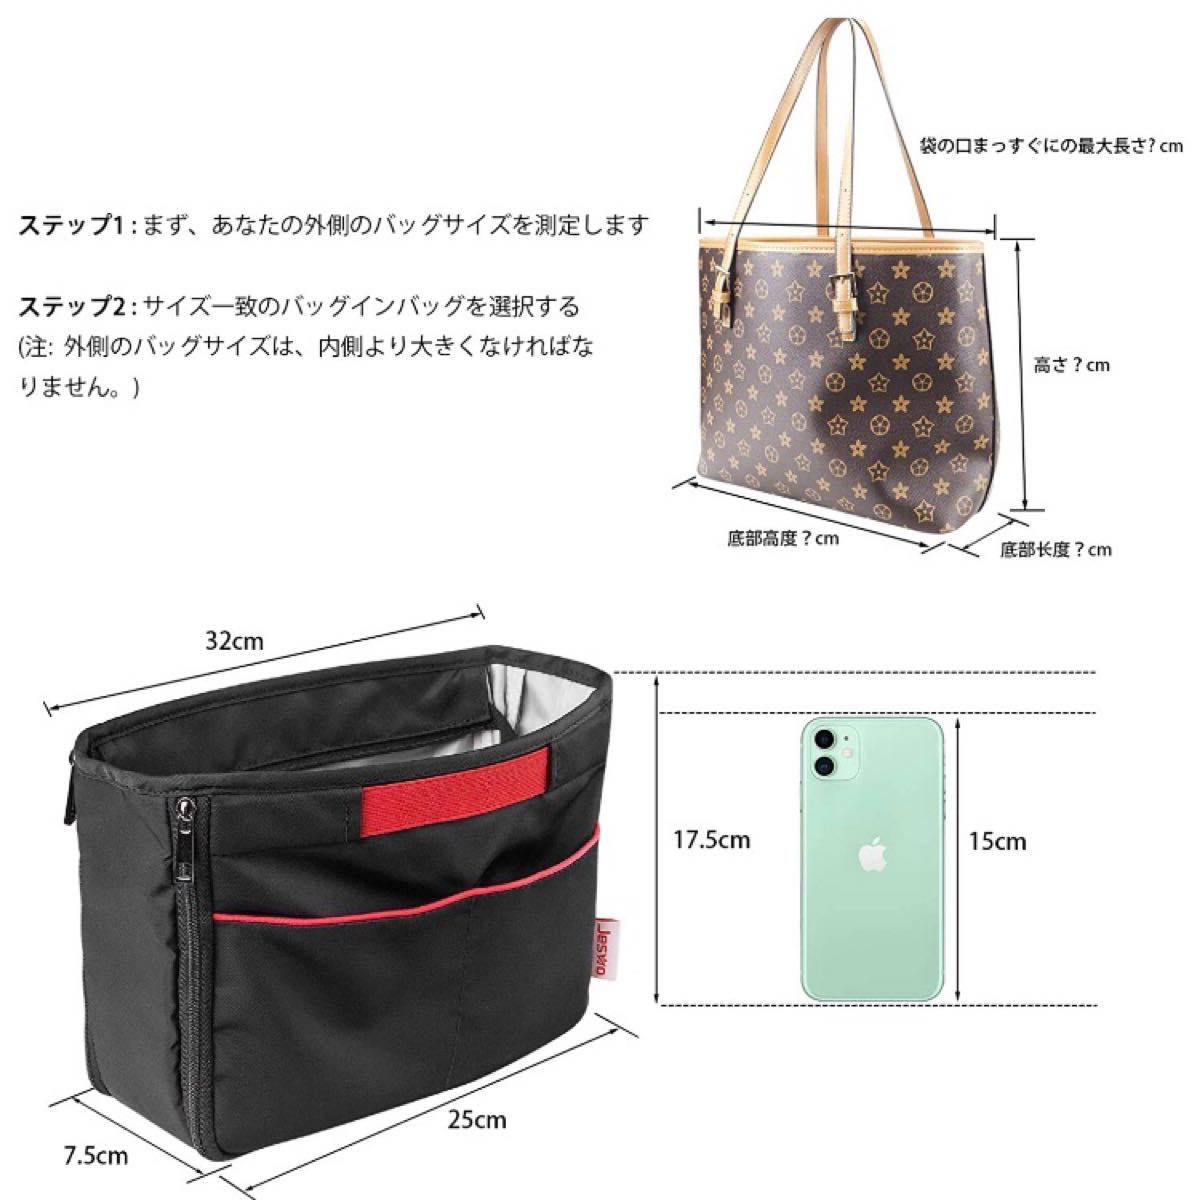 【新品】バッグインバッグ 軽量 インナーバッグ 拡張可能 トートバック用 大容量